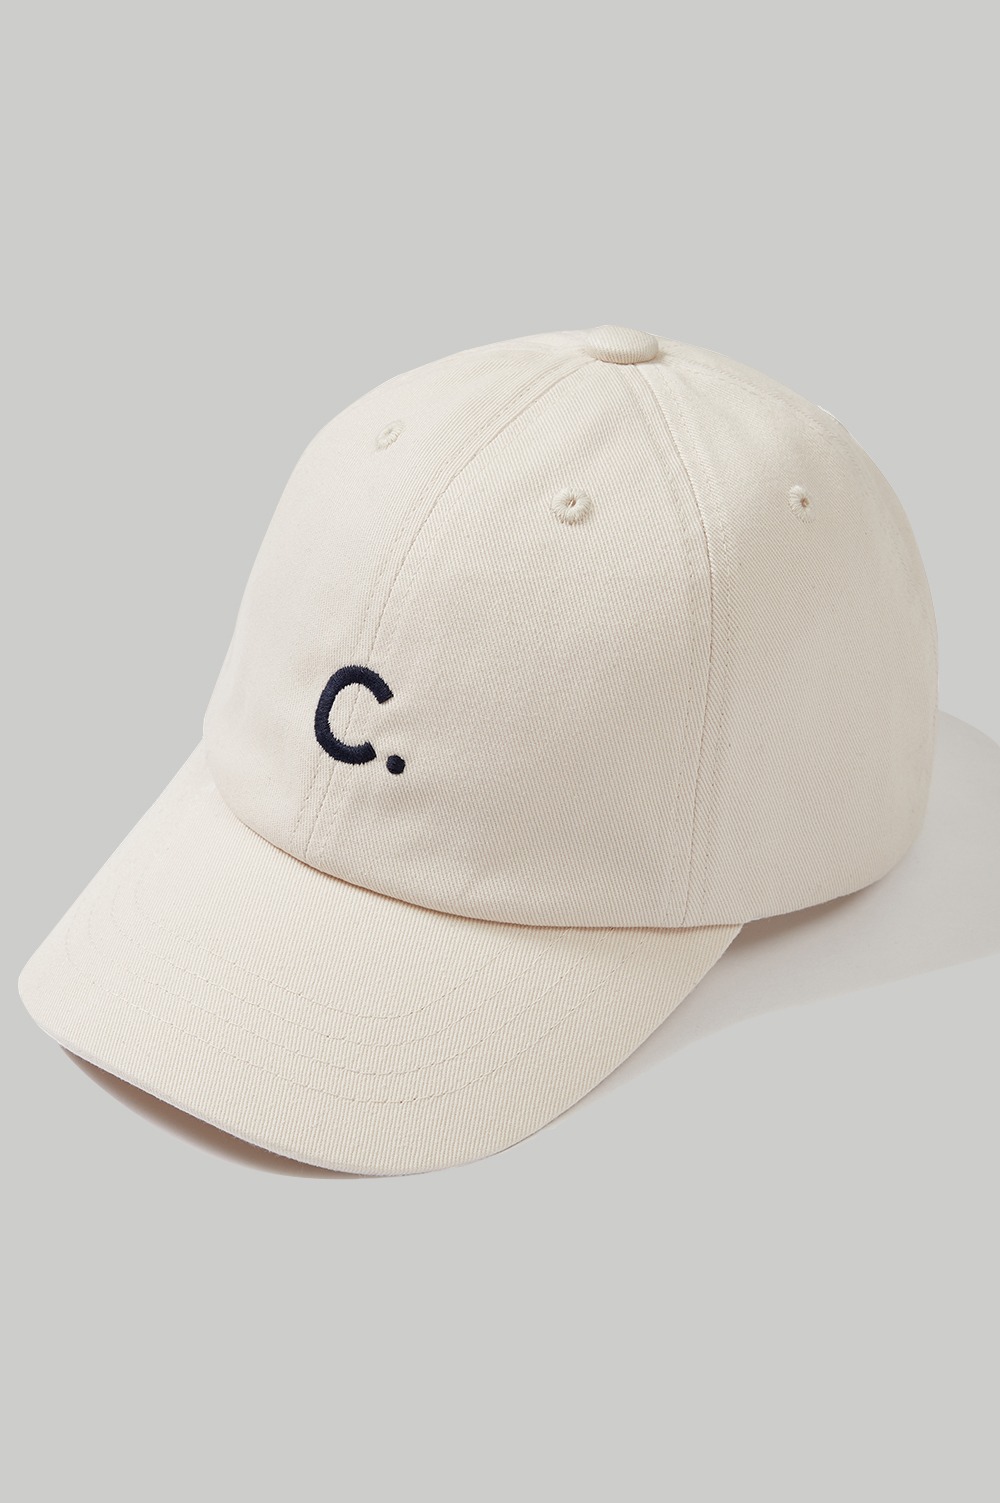 clove - [22FW clove] Cotton Baseball Cap_Kids (Ivory)